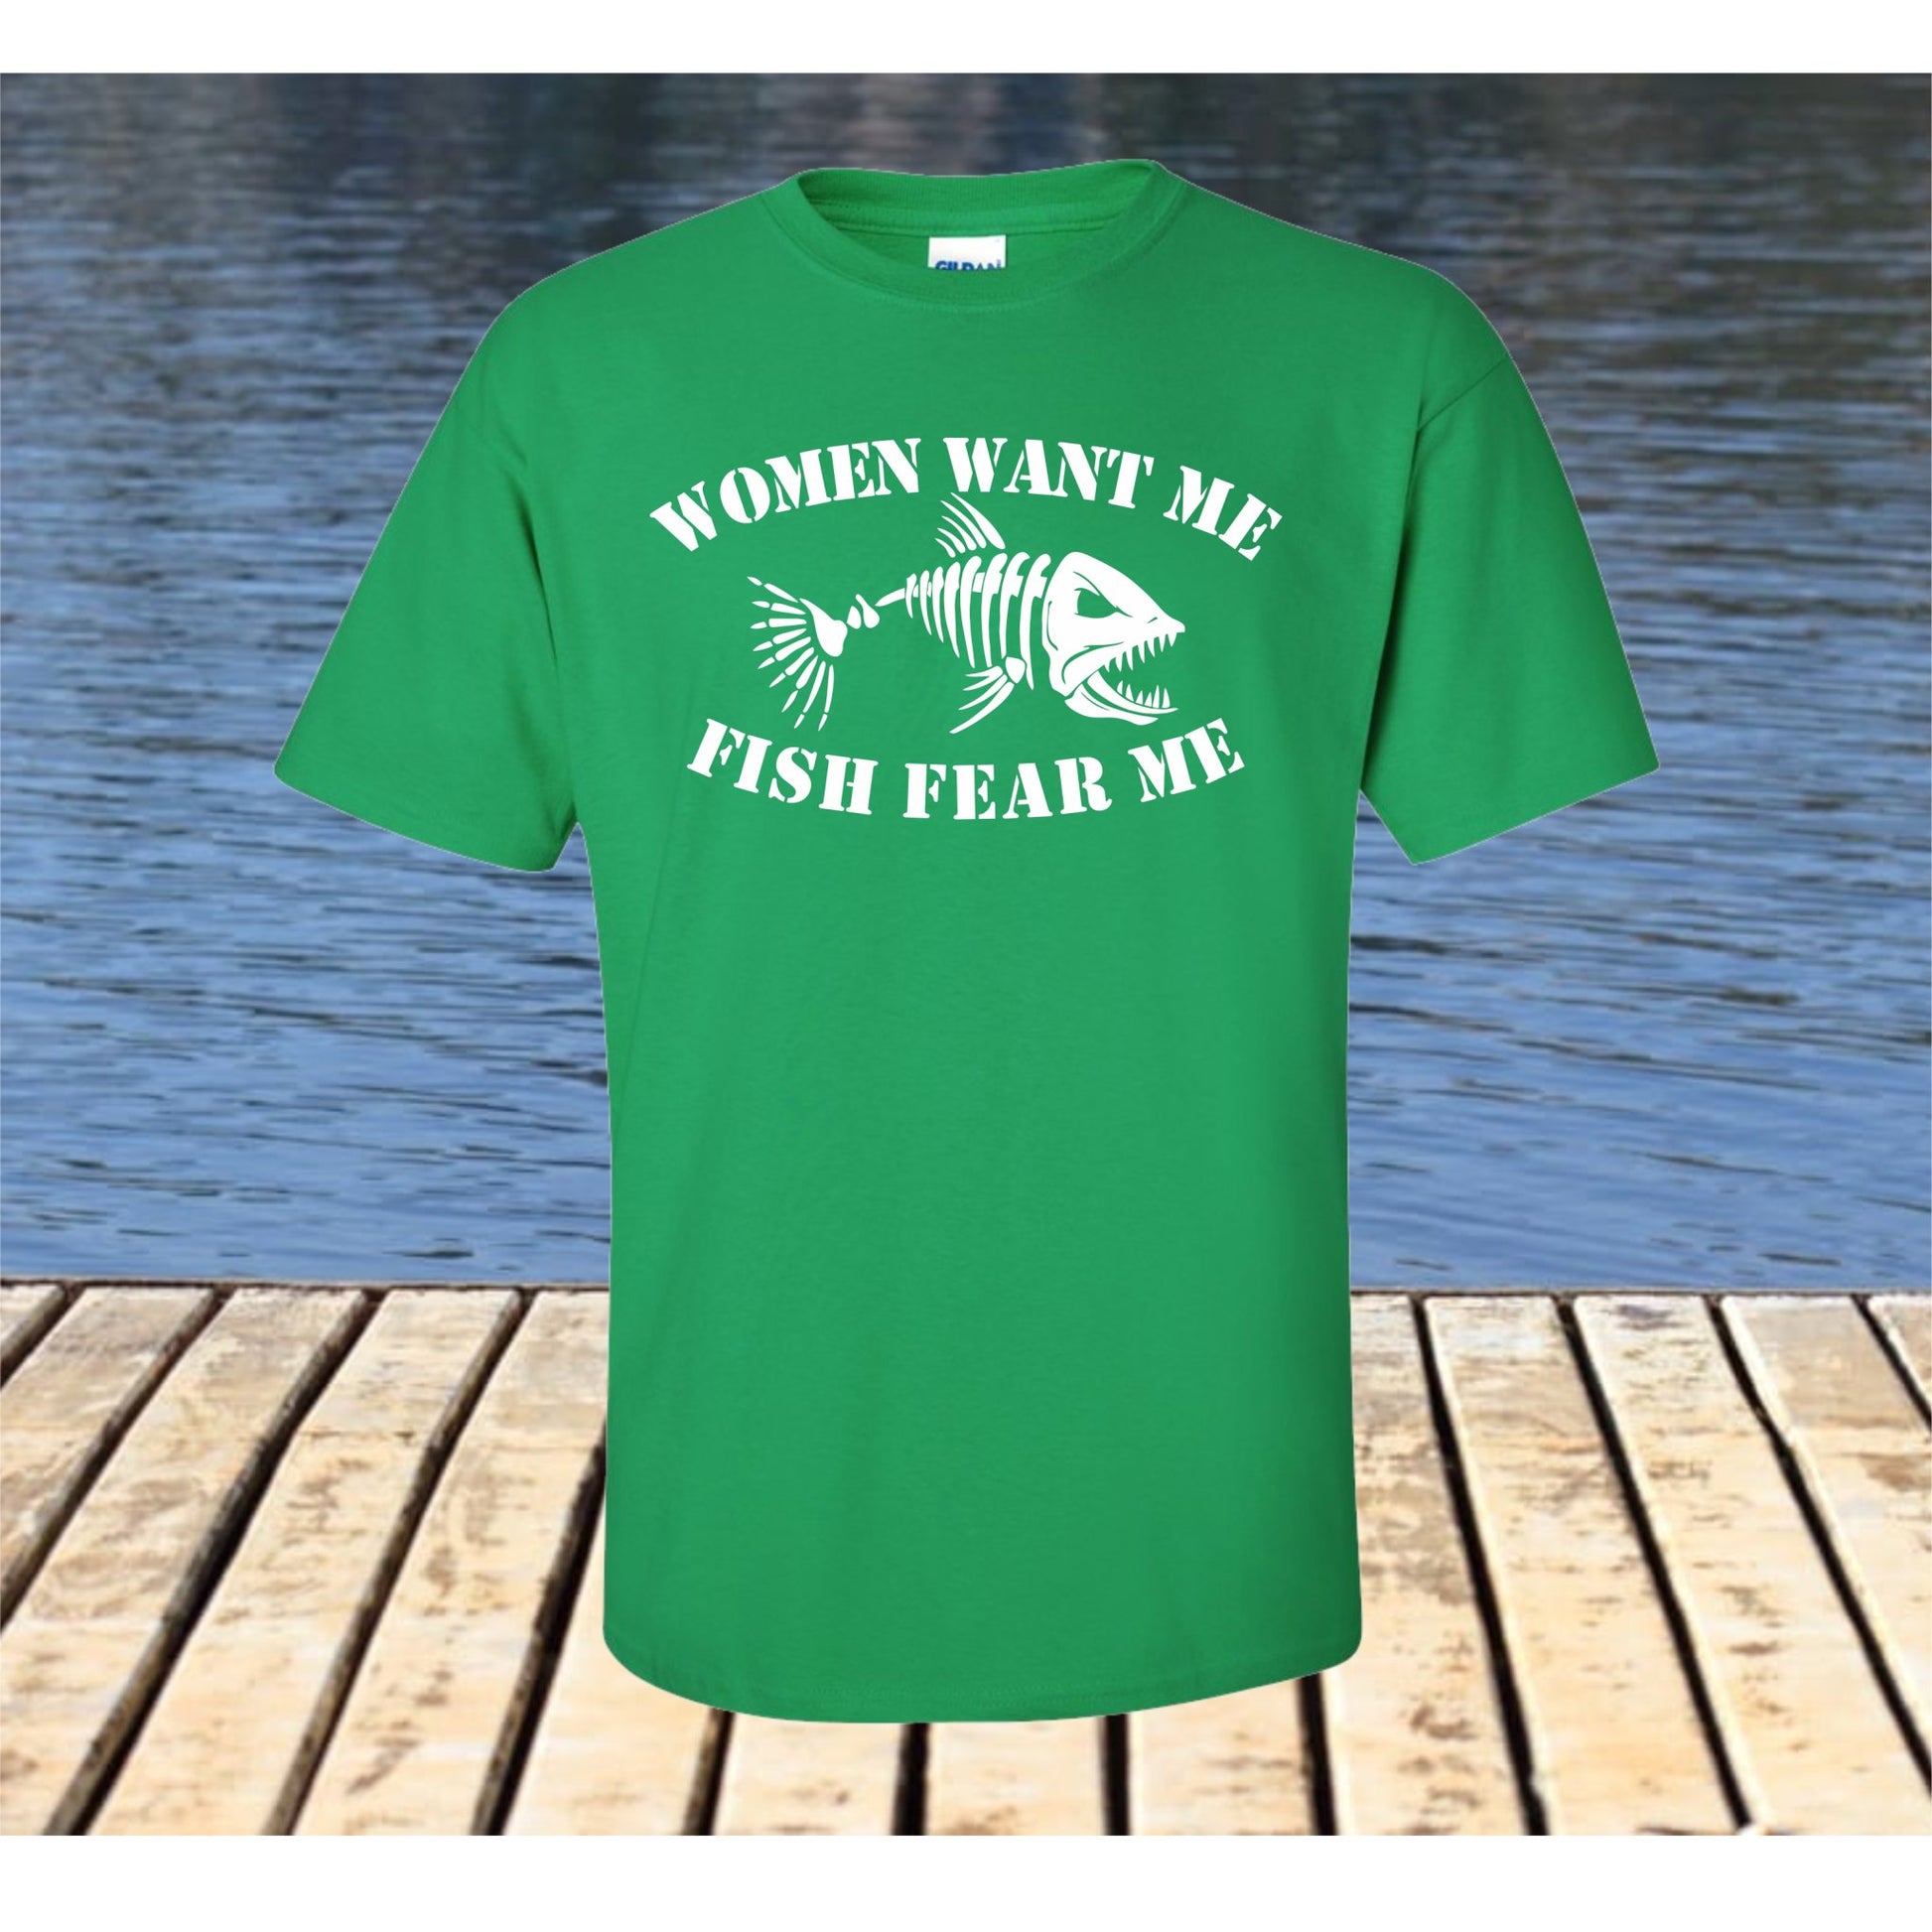 Women Want me, Fish fear me t shirt, fishing tee shirt - SBS T Shop